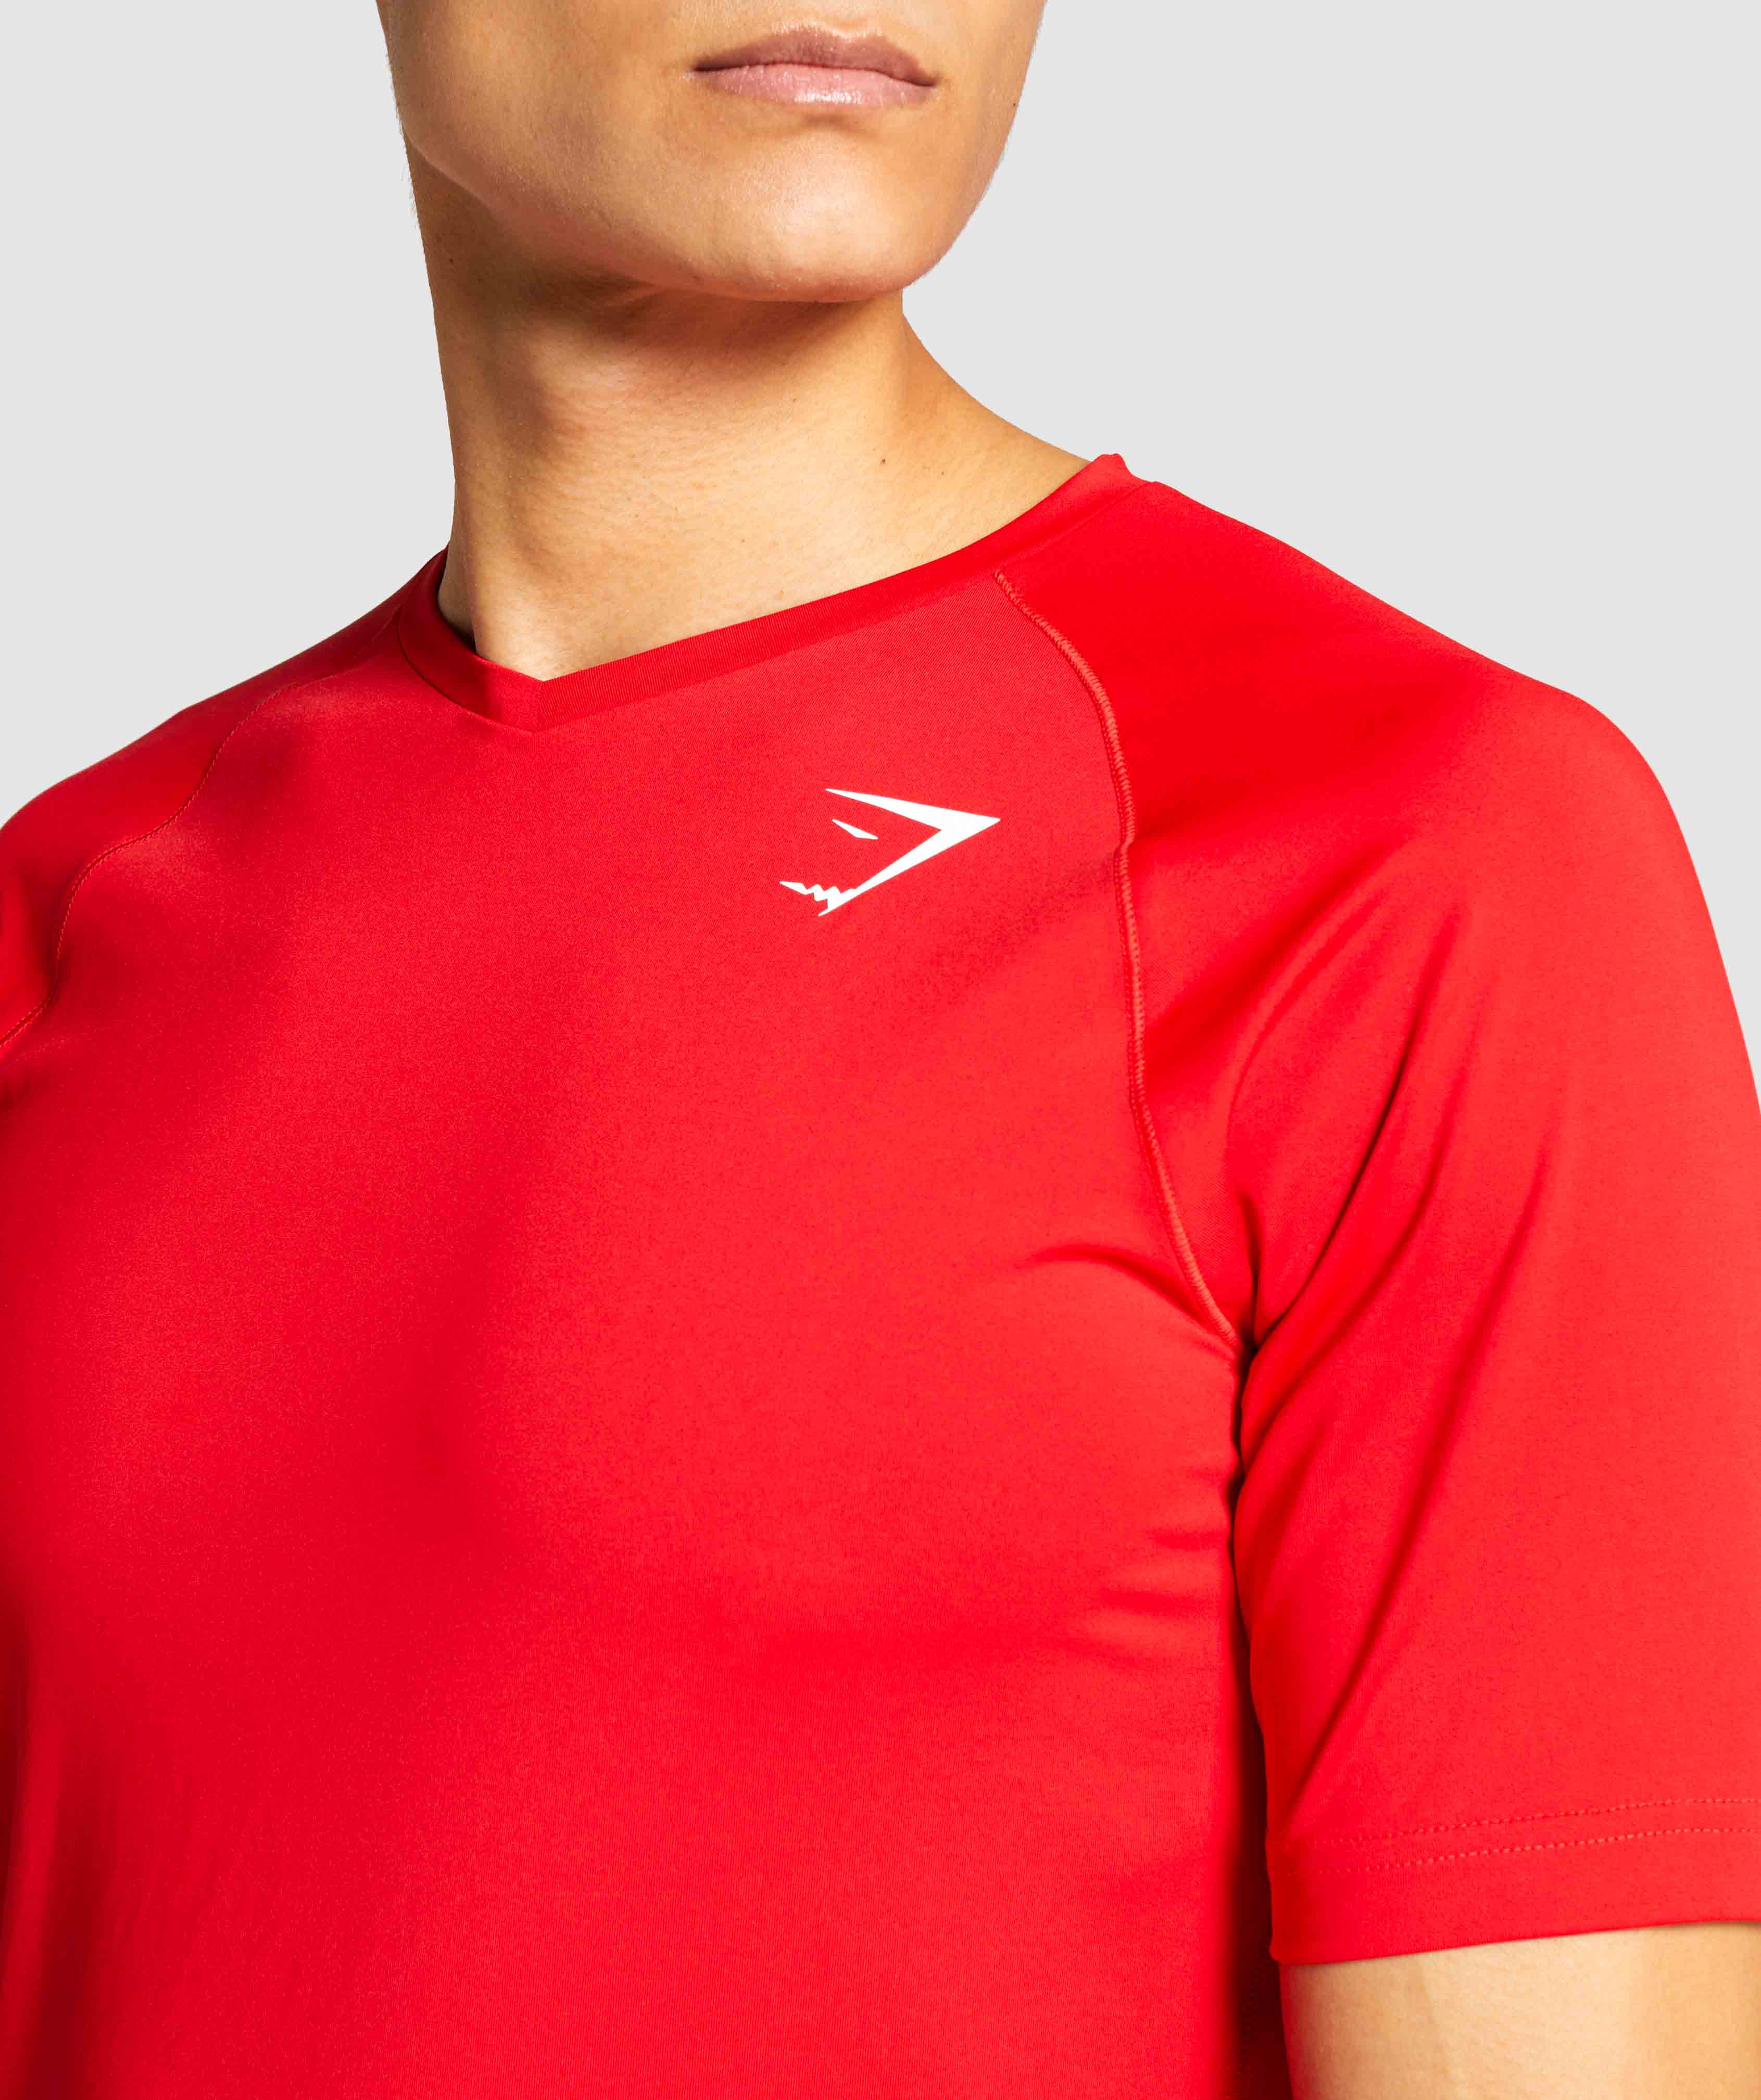 GYMSHARK Veer Red T-shirt for Men